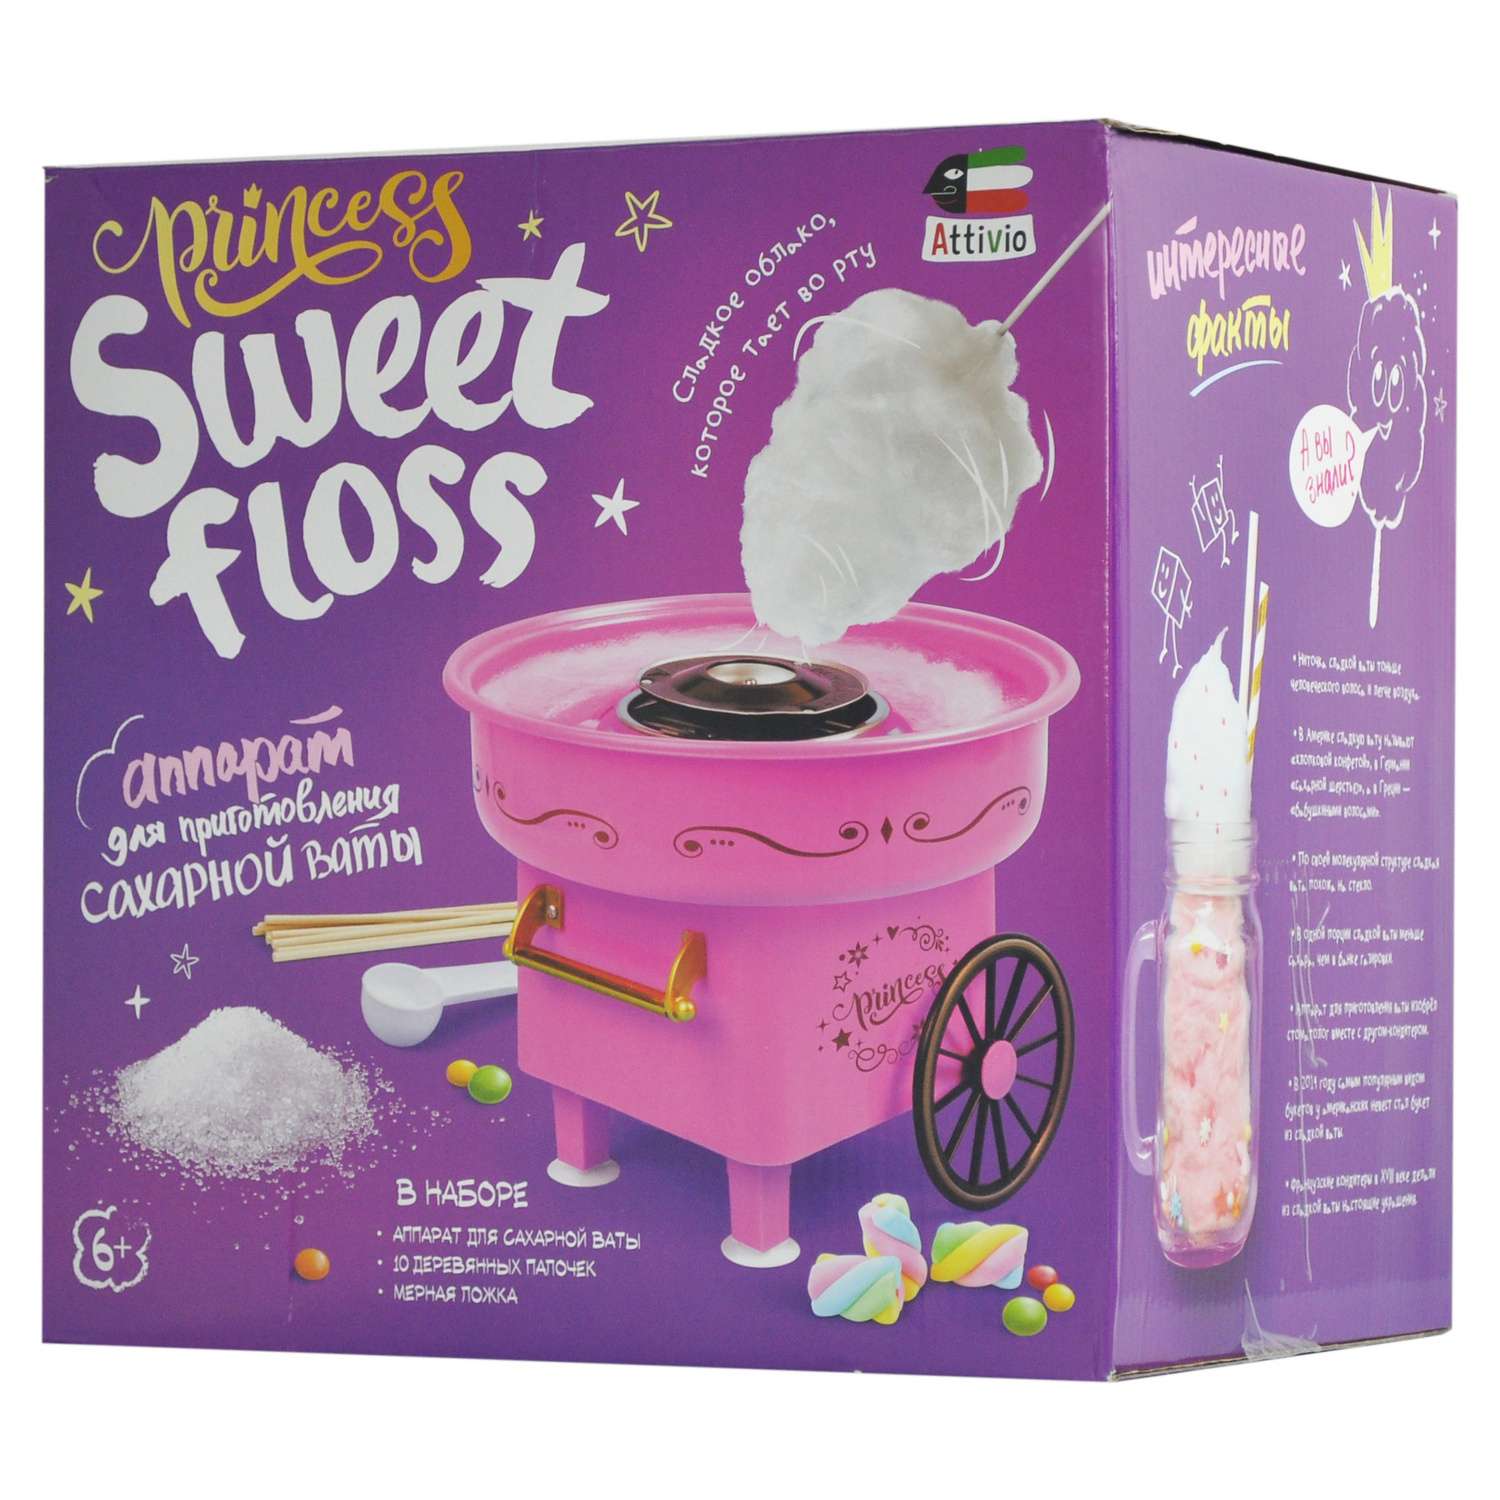 Готовим сладкую сахарную вату в домашних условиях – инструкция как сделать десерт дома без аппарата